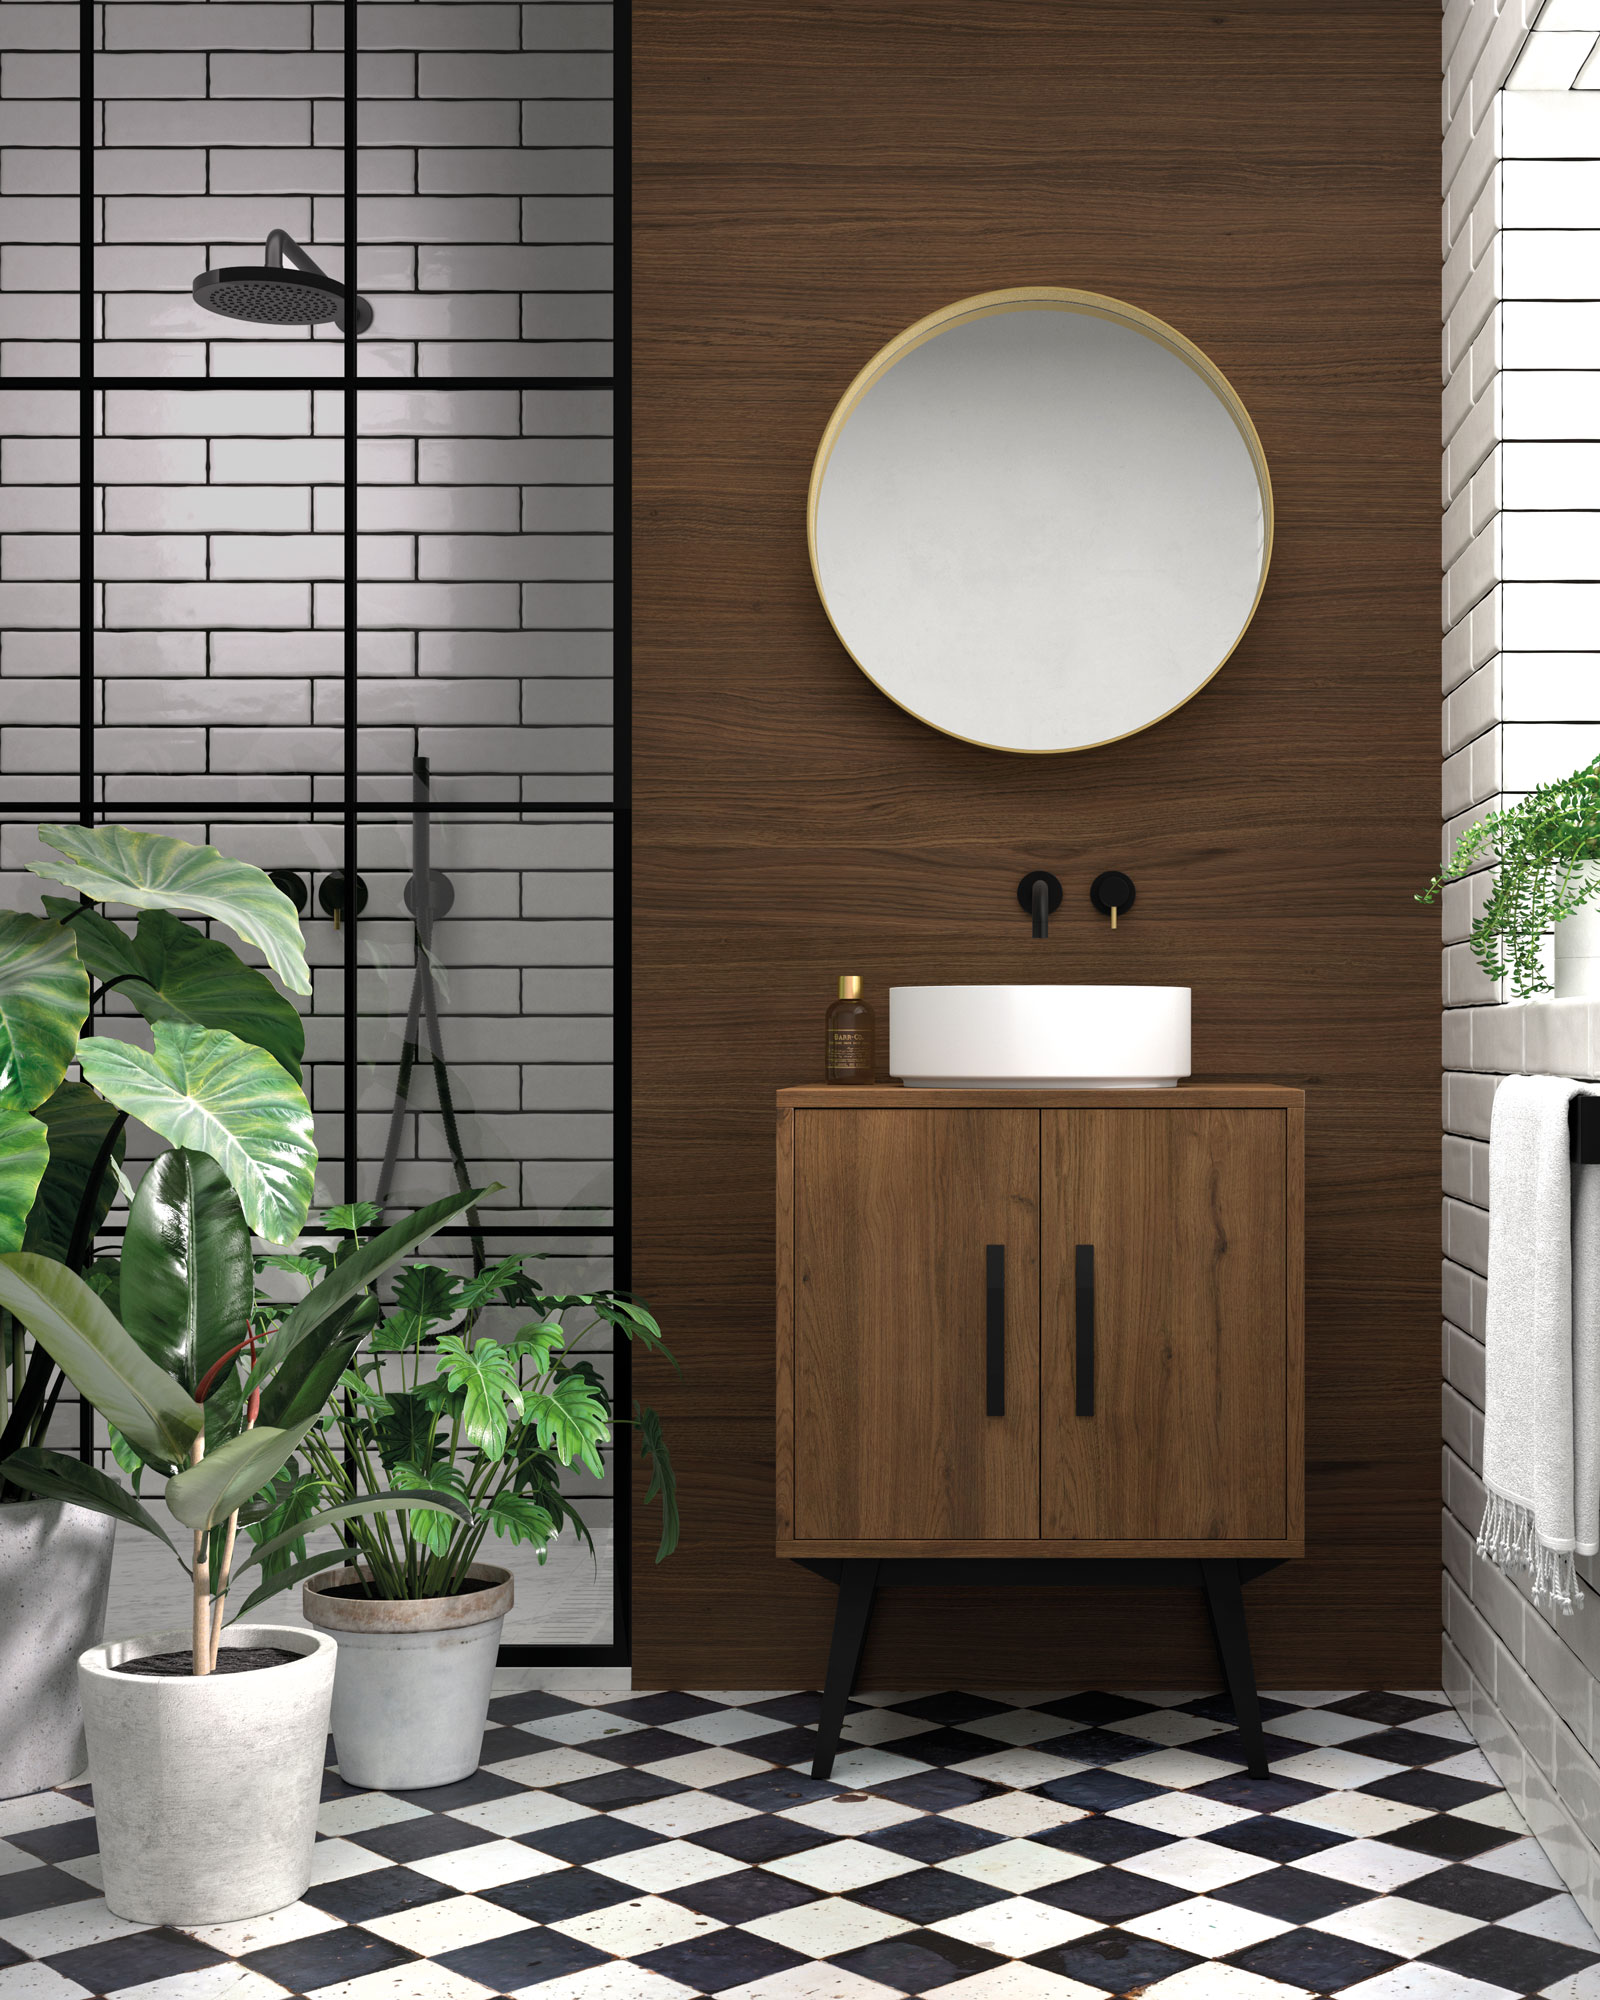 Muebles auxiliares de baño: funcionales y sofisticados